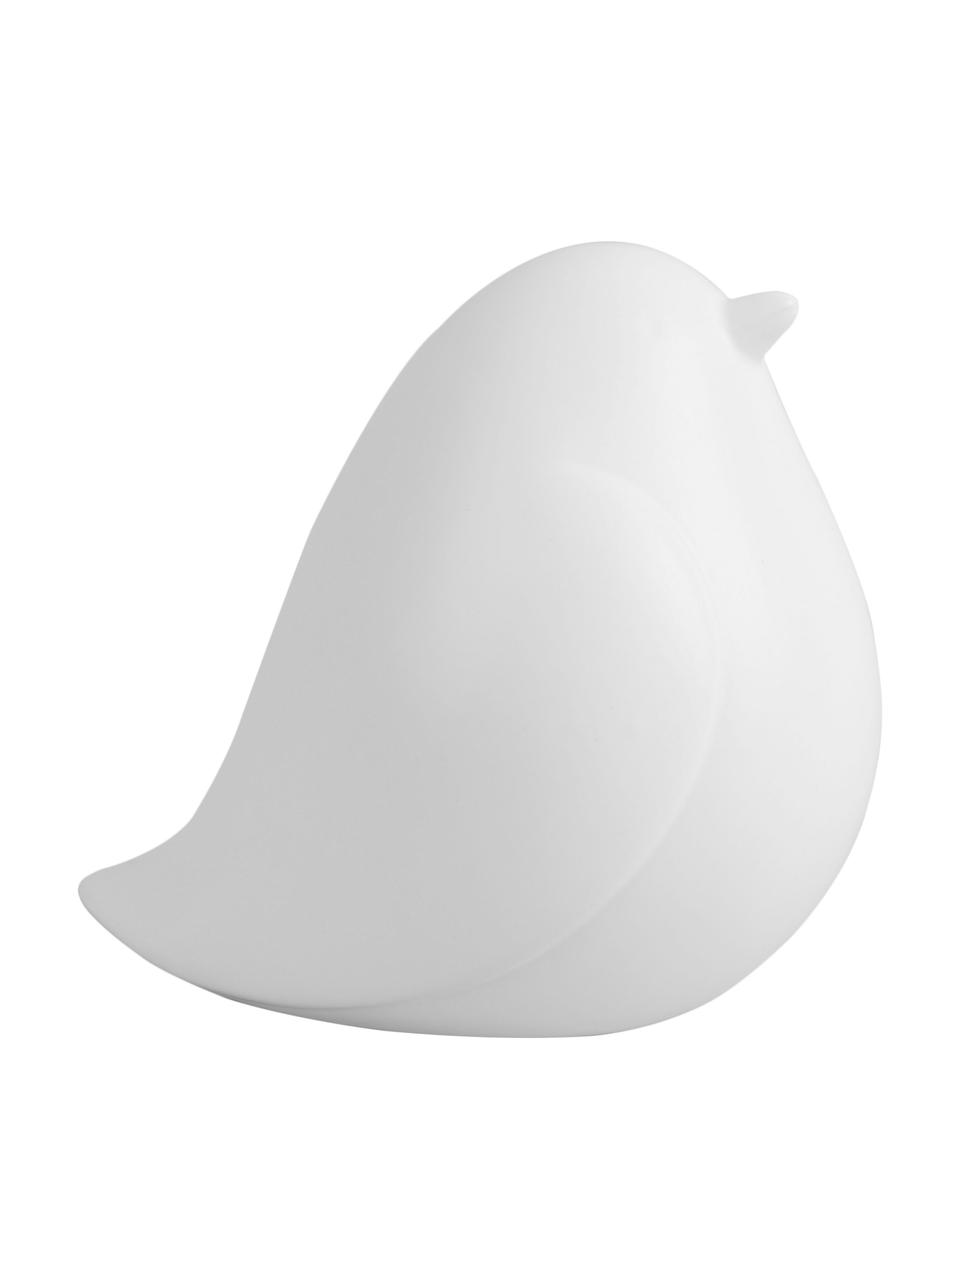 Objet déco Fat Bird, Céramique, Blanc, larg. 14 cm, haut. 14 cm